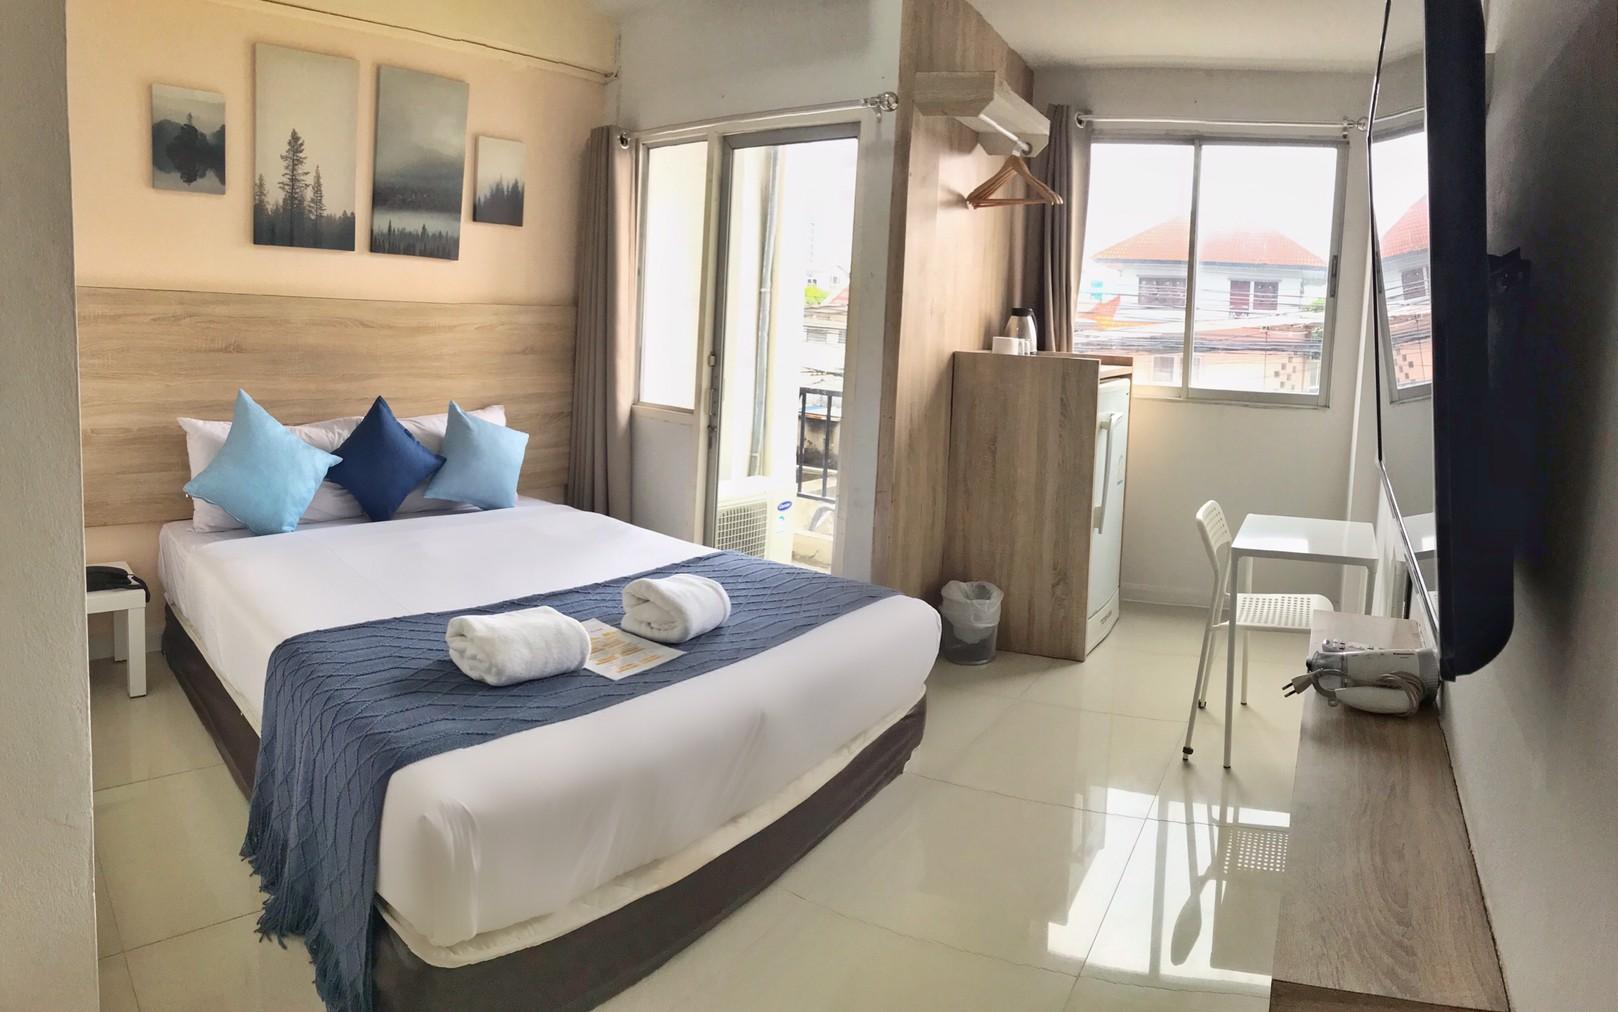 รีวิว48 วิลล์ ดอนเมือง แอร์พอร์ต - โปรโมชั่นโรงแรม 3 ดาวในกรุงเทพฯ | Trip.com